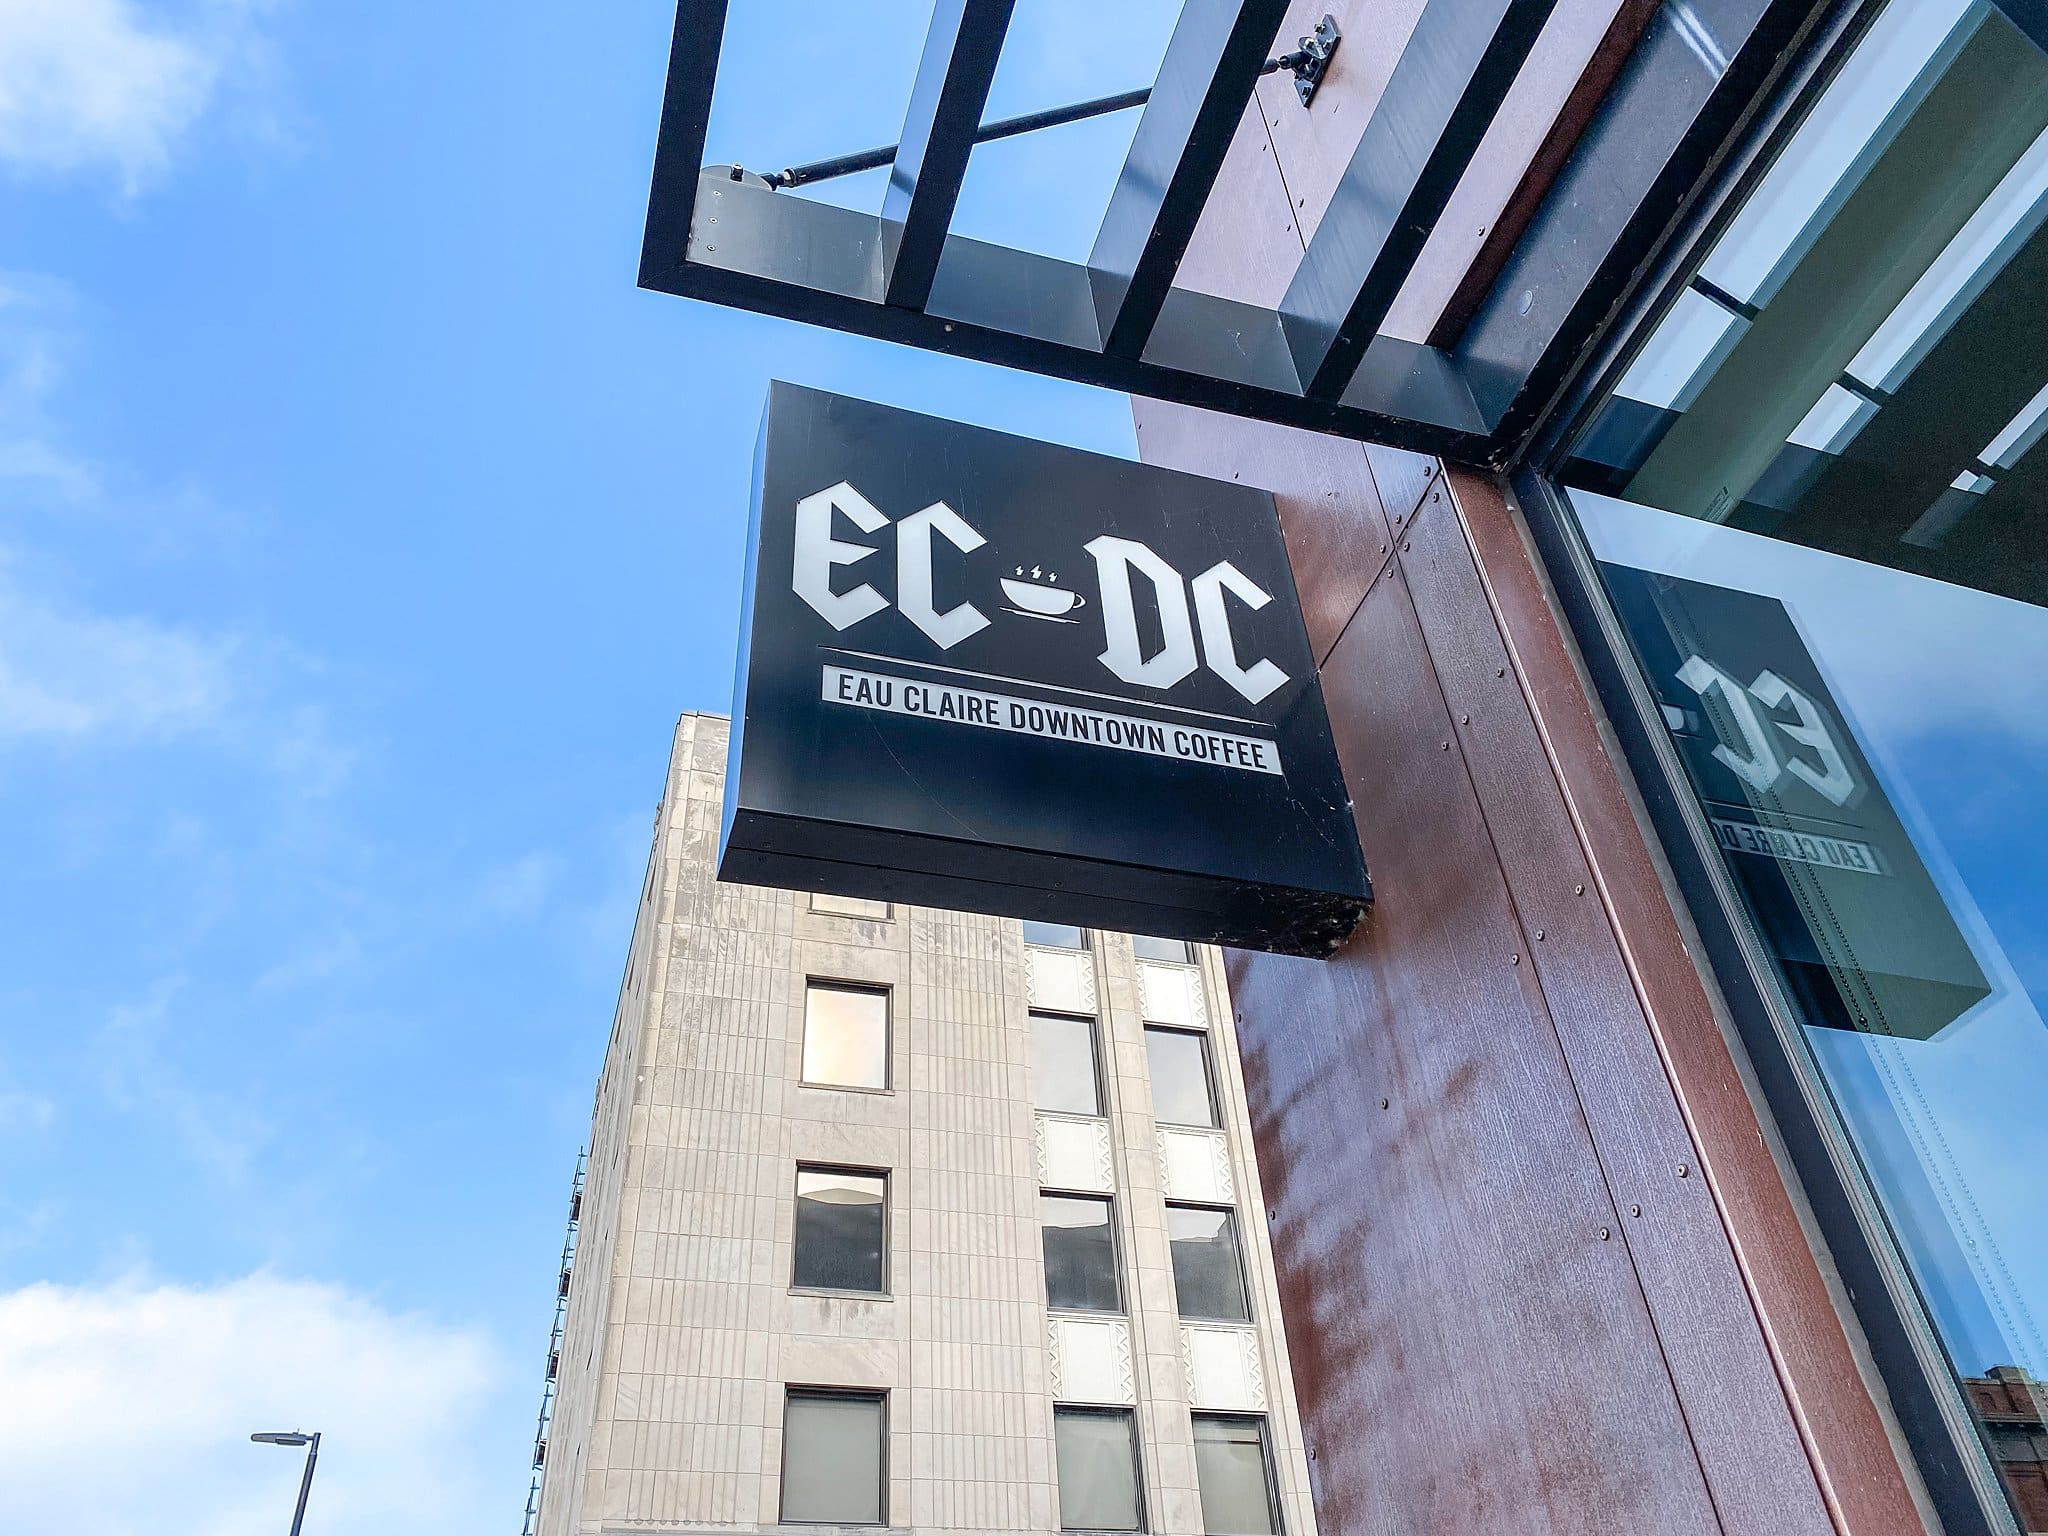 EC DC Coffee